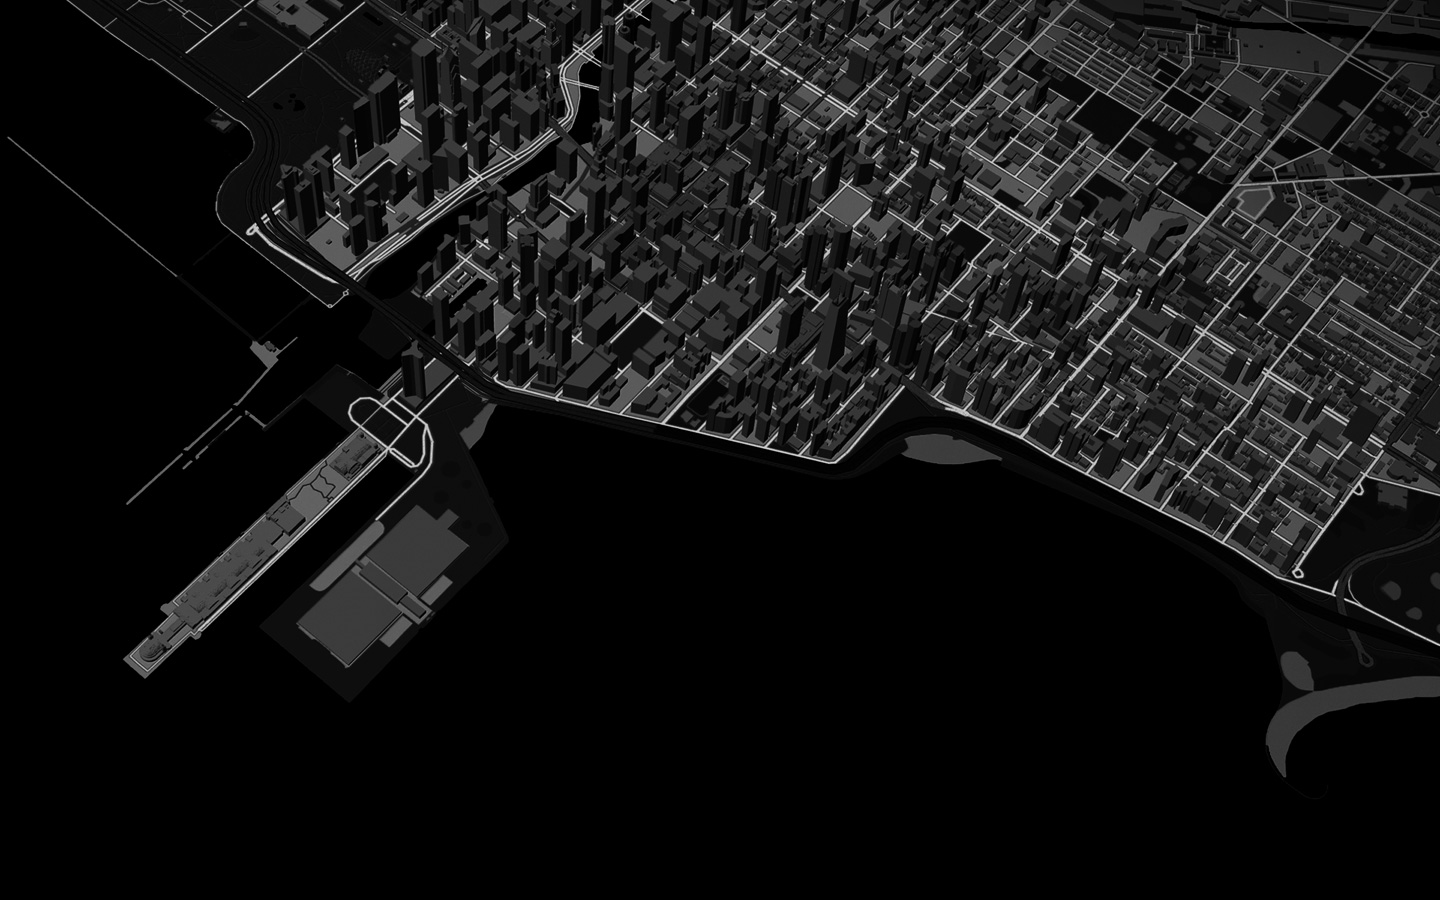 Animação de uma linha que representa o trajeto de uma corrida usando a visualização 3D de uma cidade no Mapas.